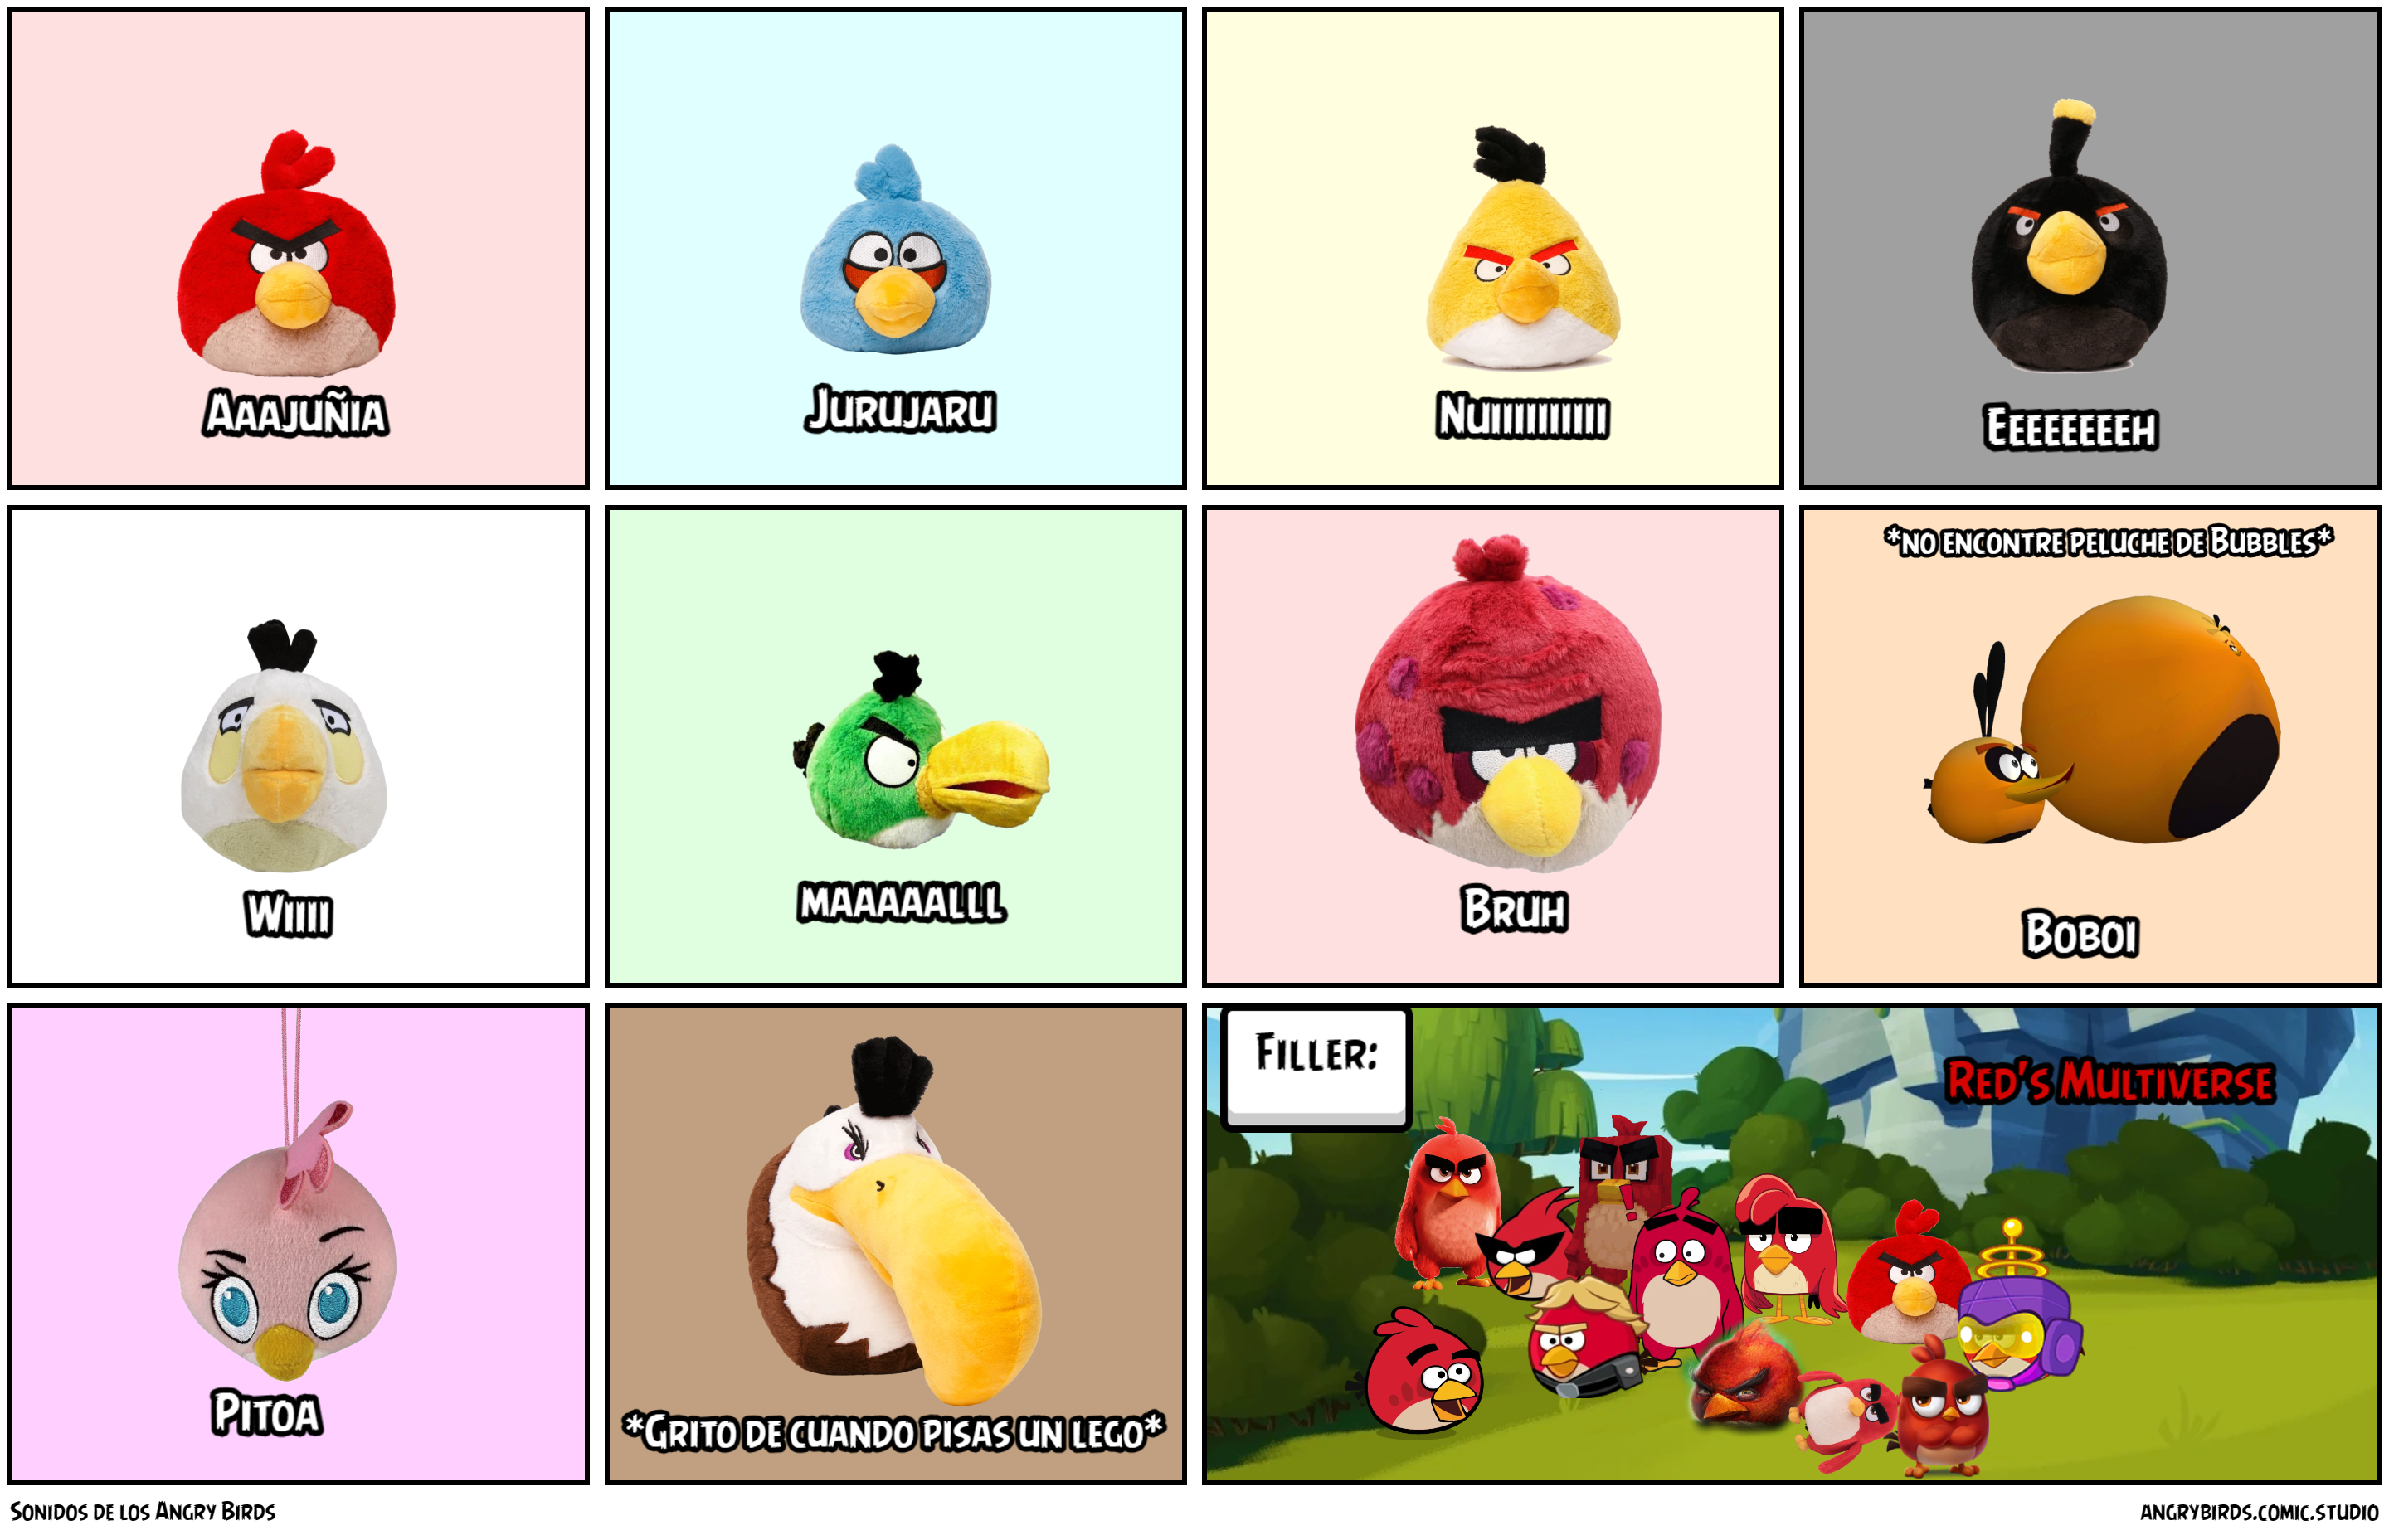 Sonidos de los Angry Birds